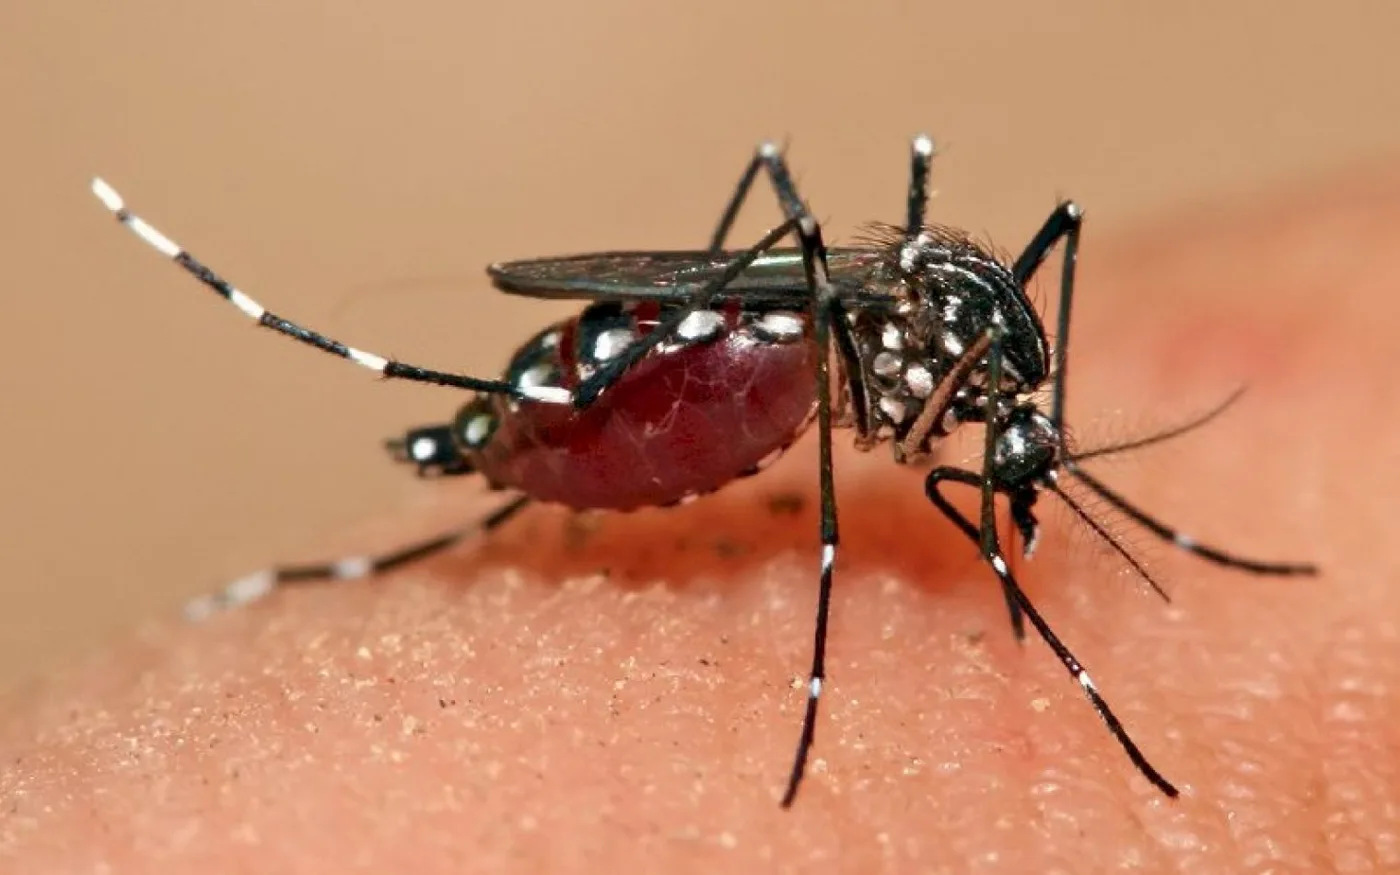 Mosquito de la especie Aedes infectado (Ae. aegypti o Ae. albopictus)..